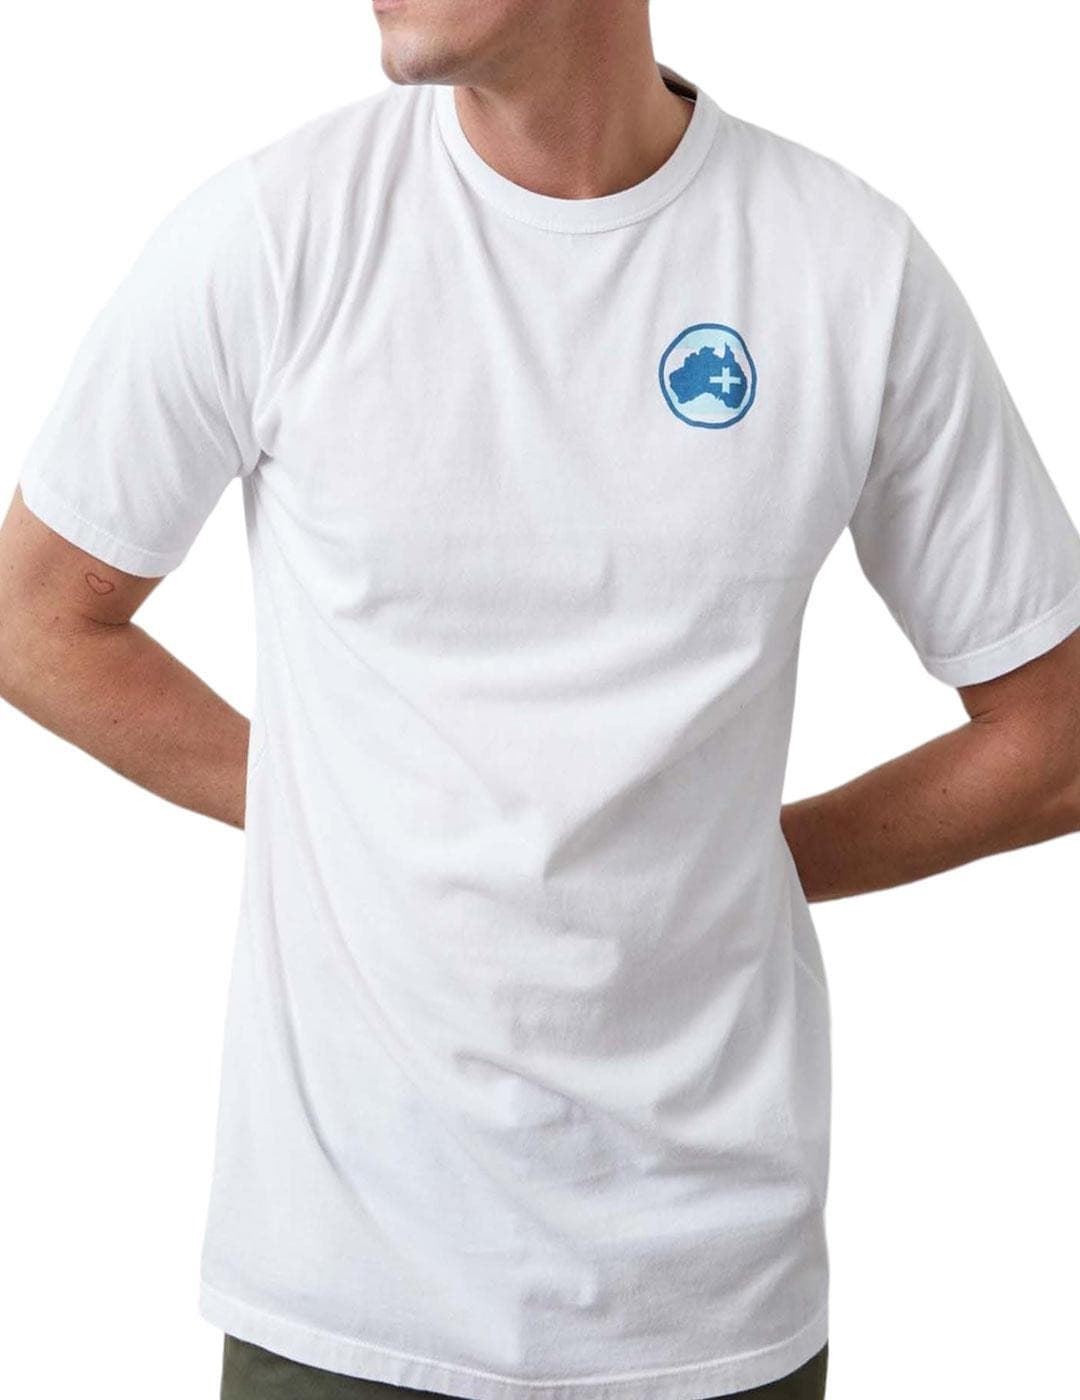 Camiseta Altonadock 105067 blanco - Imagen 1